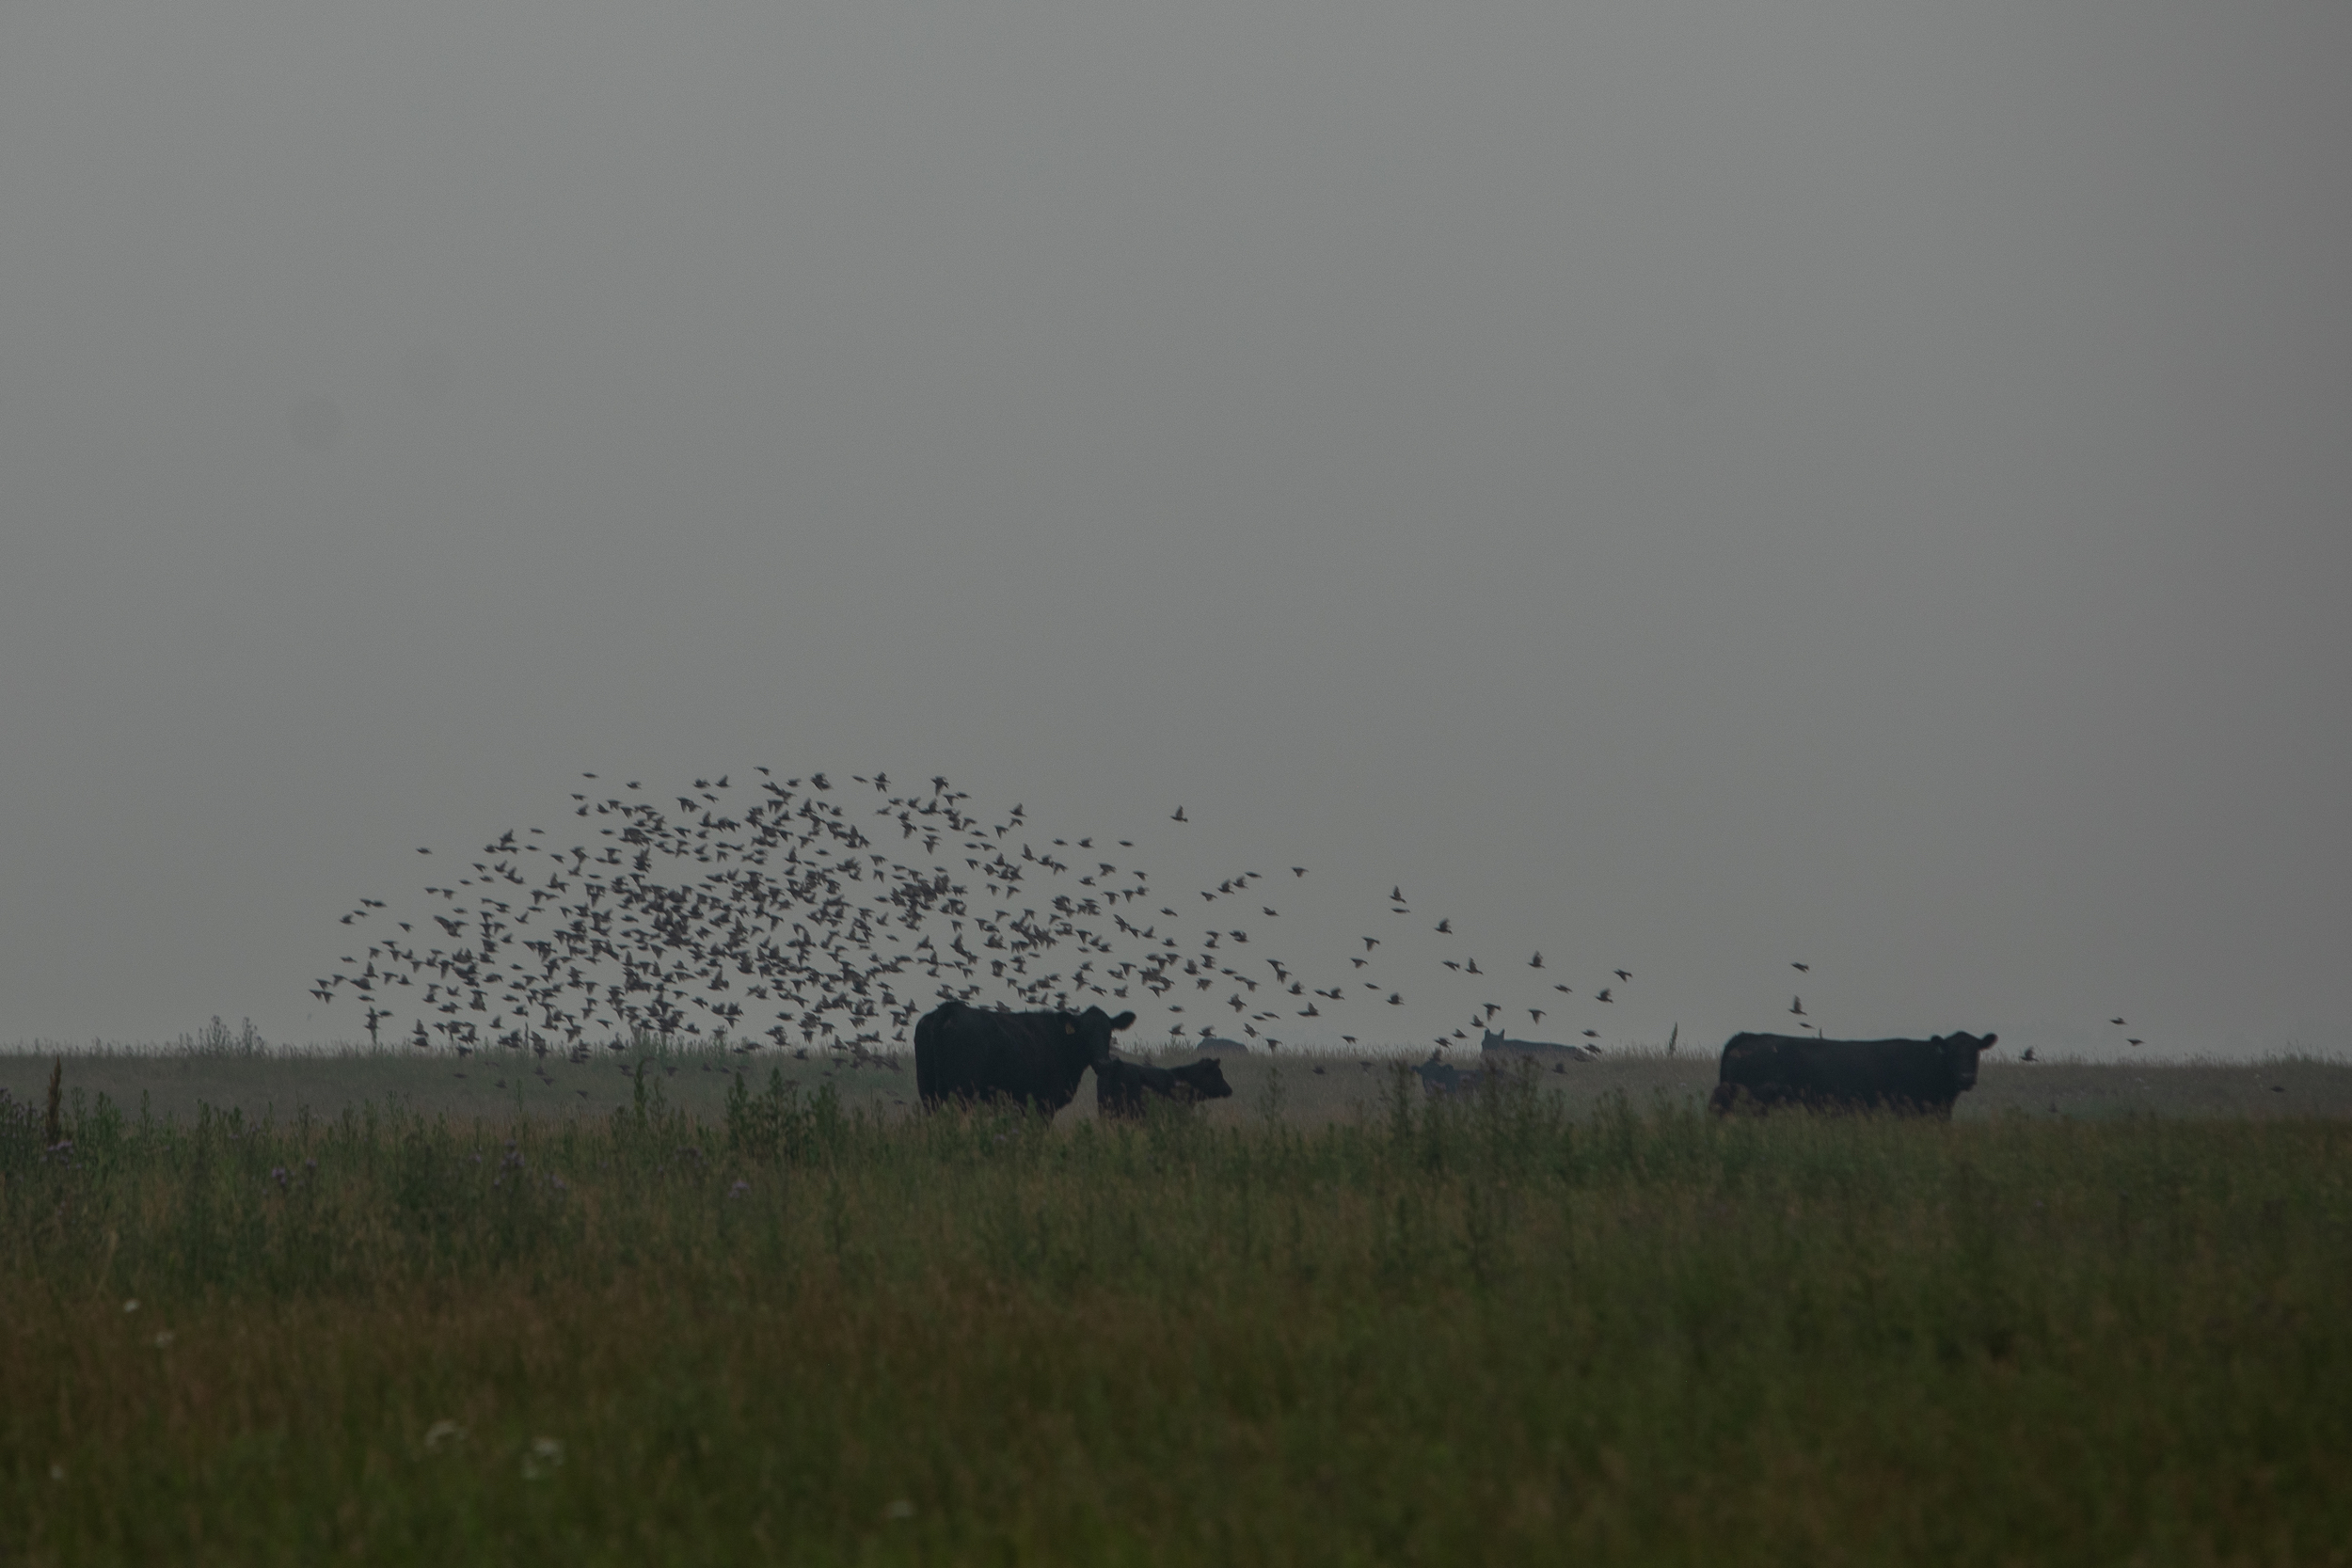 Cattle graze under a flock of birds in an Alberta field